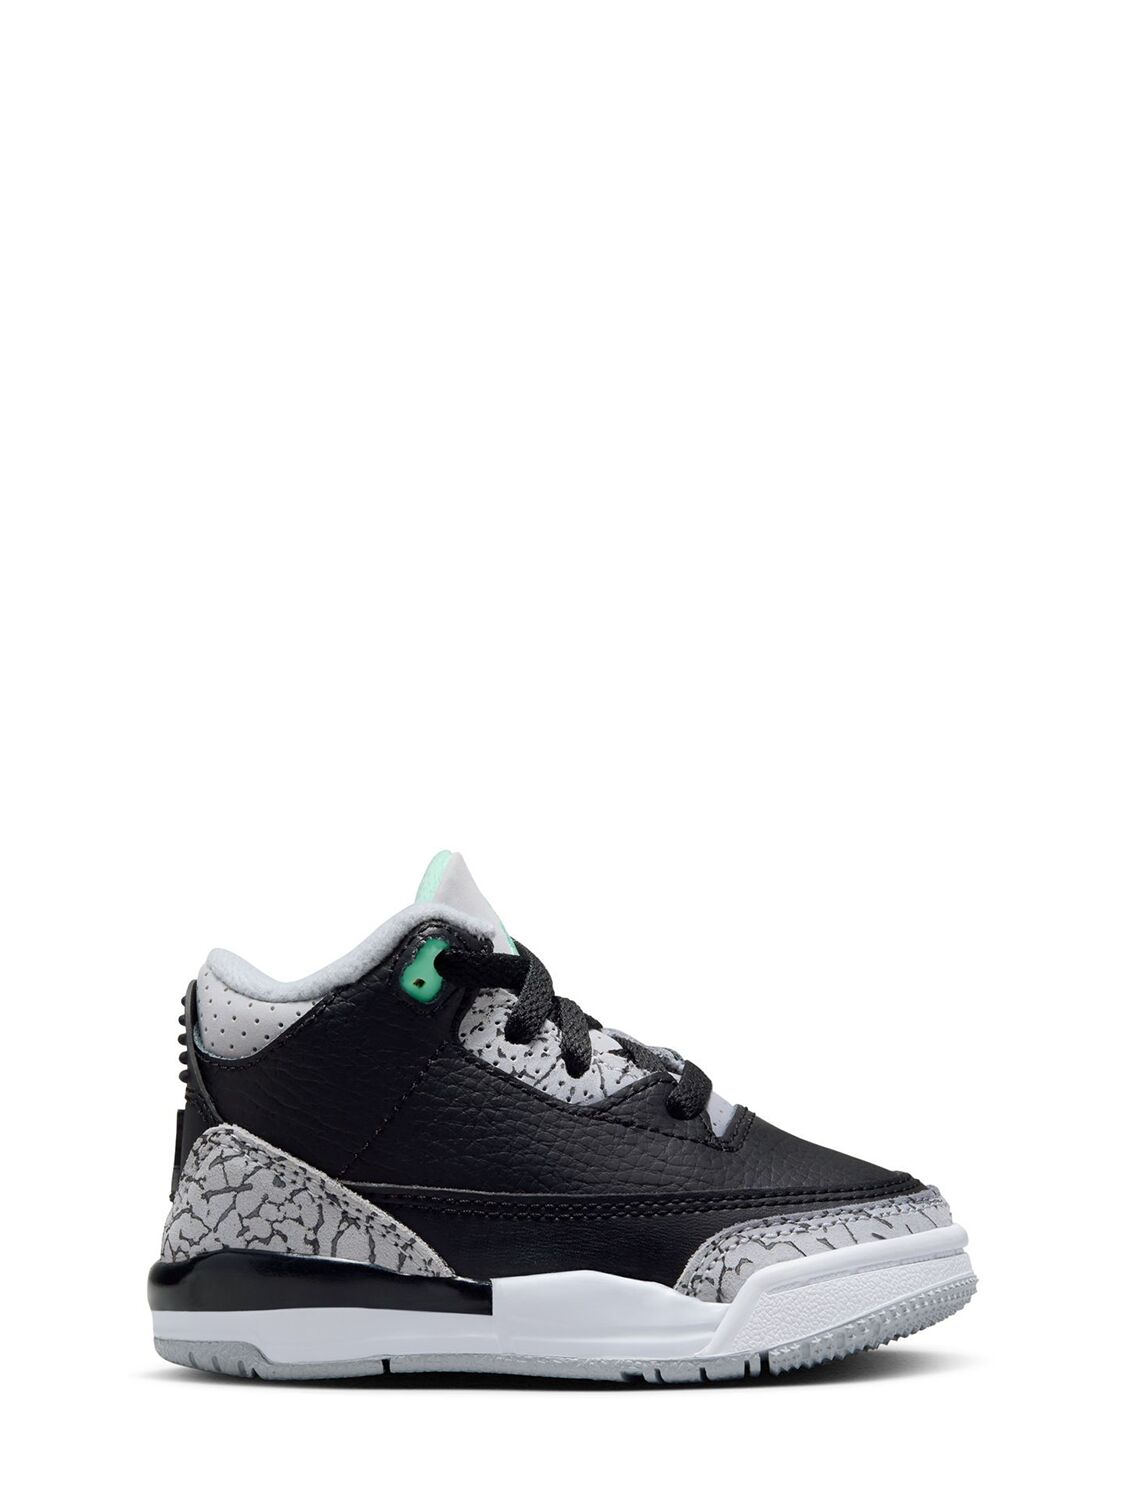 Image of Jordan 3 Retro Sneakers